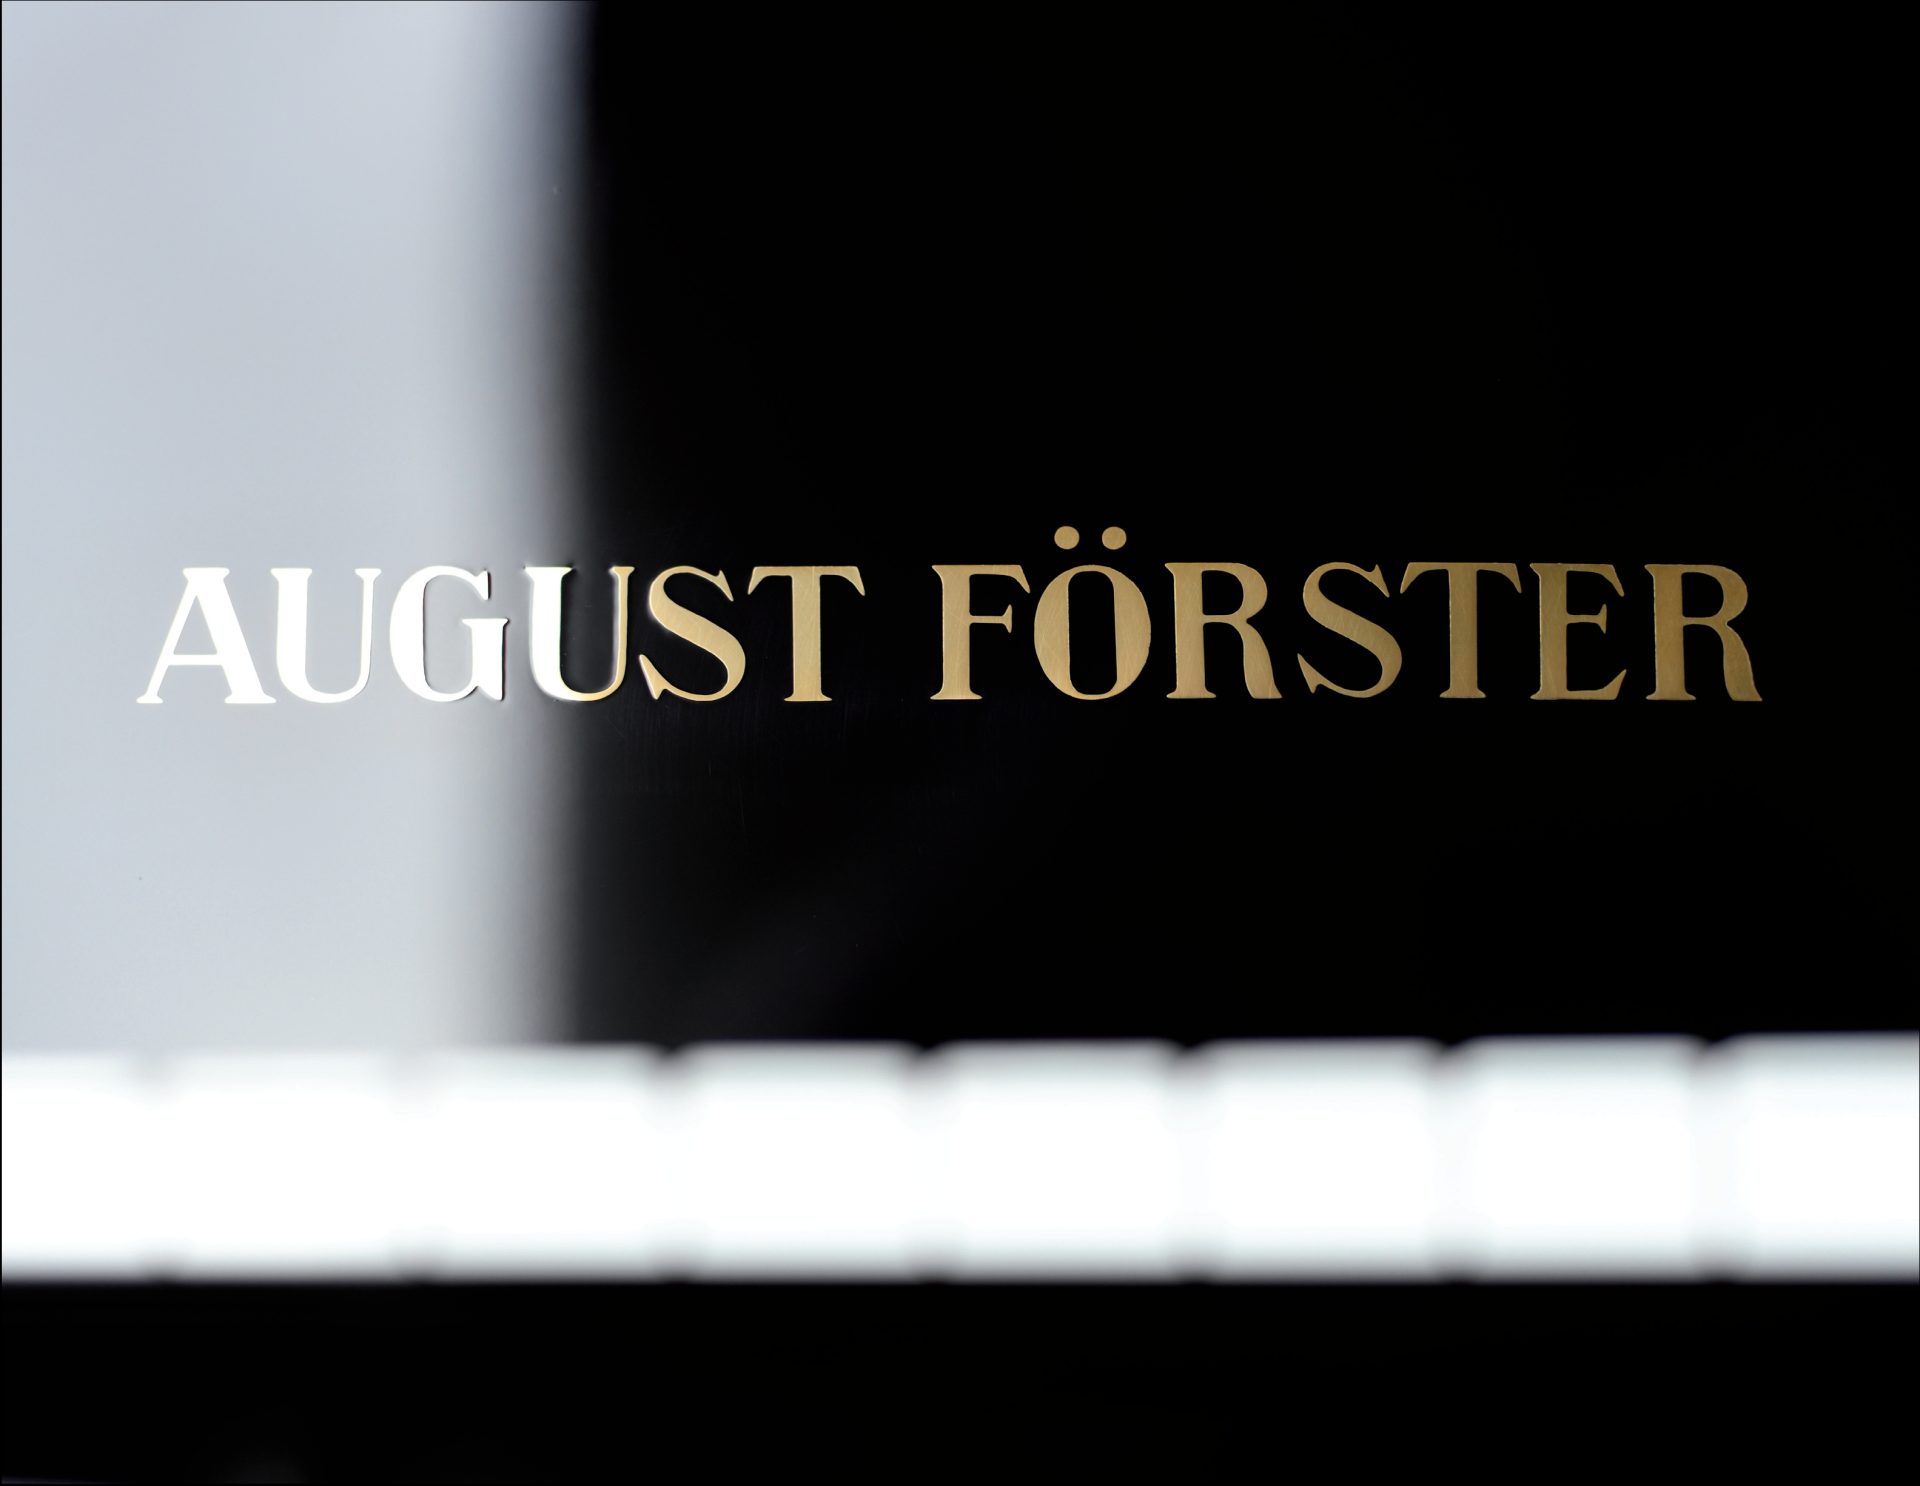 August Förster
125 G